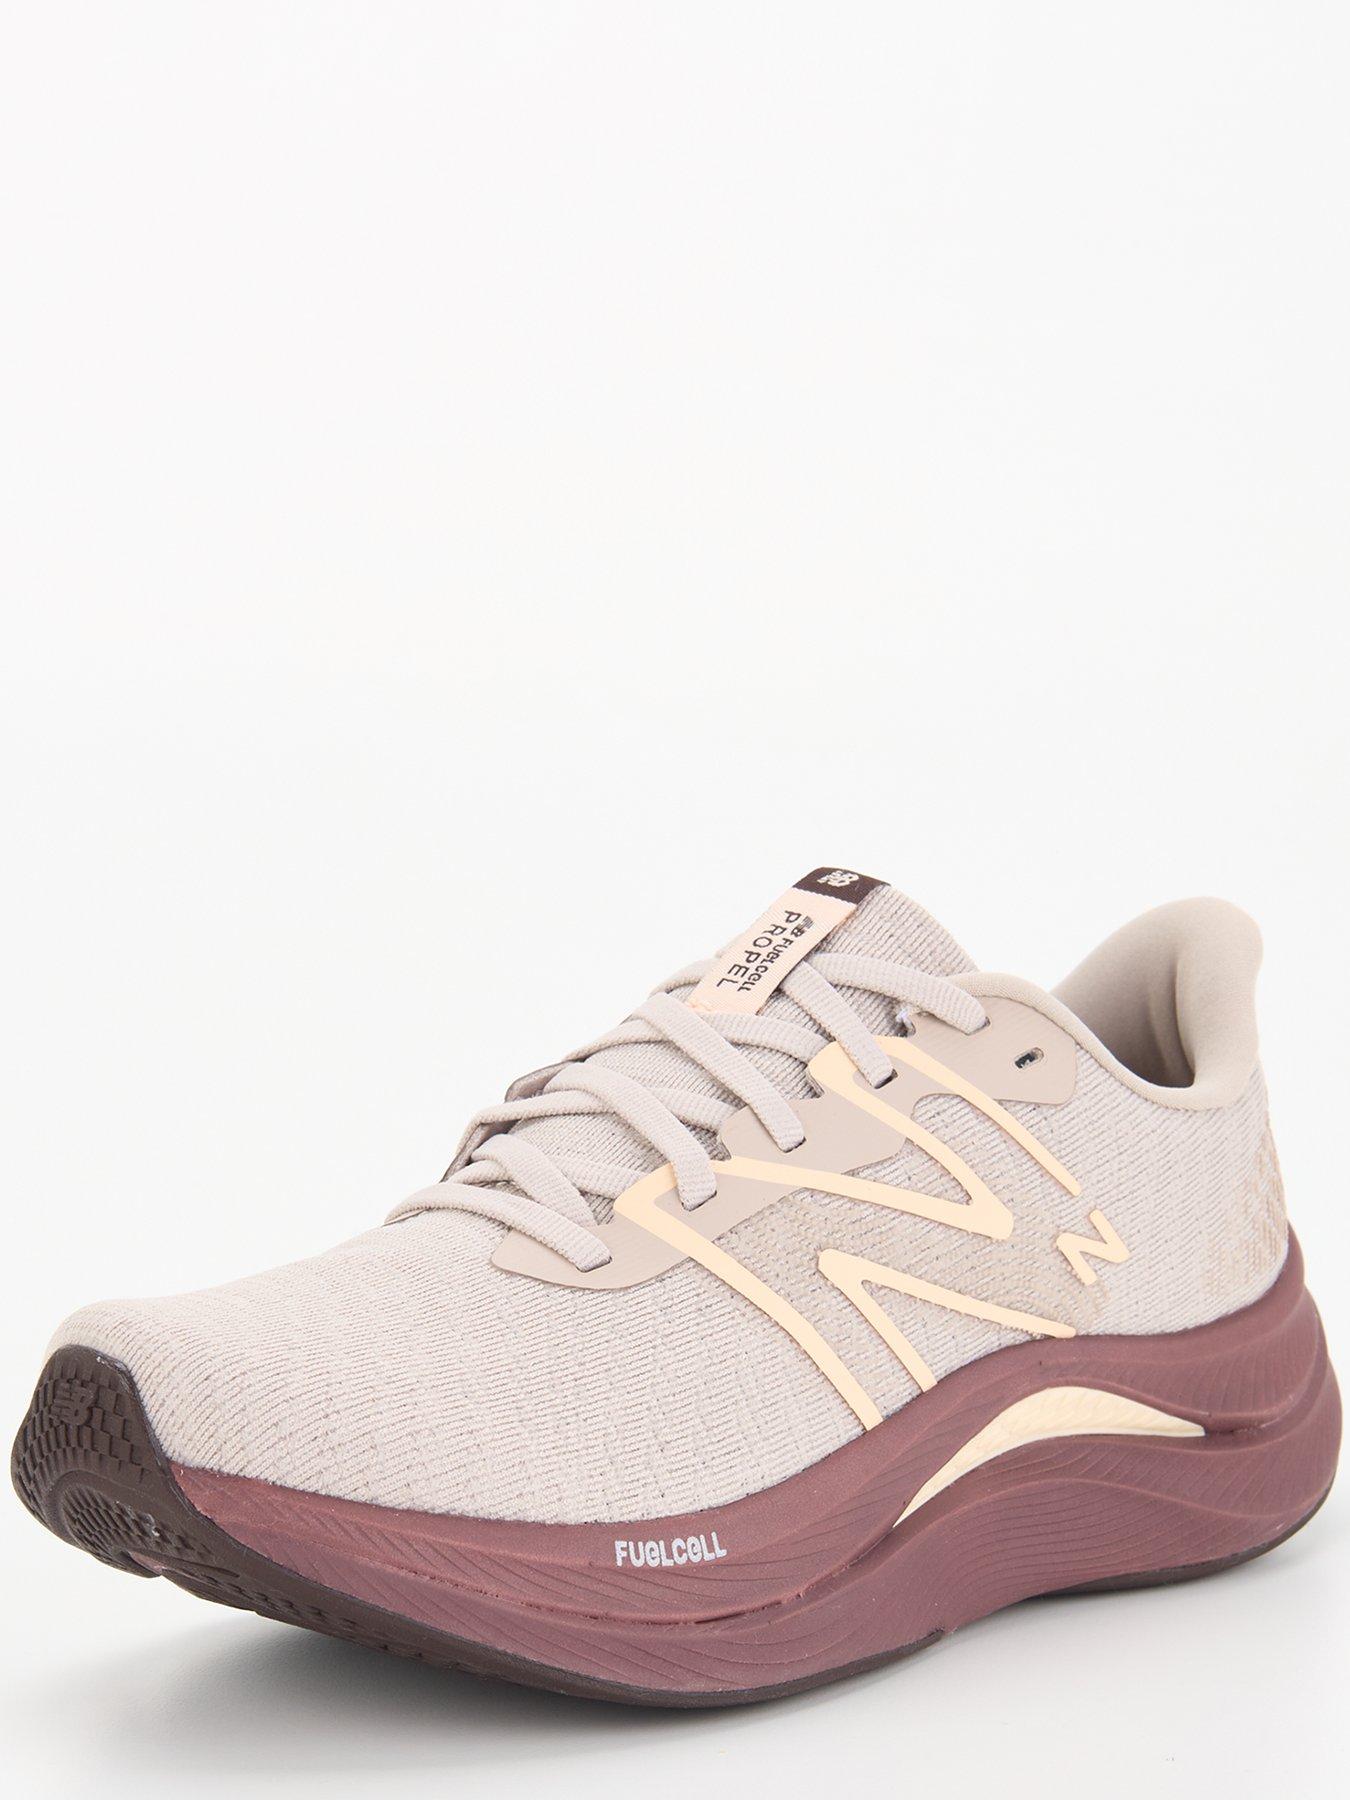 Girls New Balance 535 White/Purple Athletic Shoes Size 11 Used